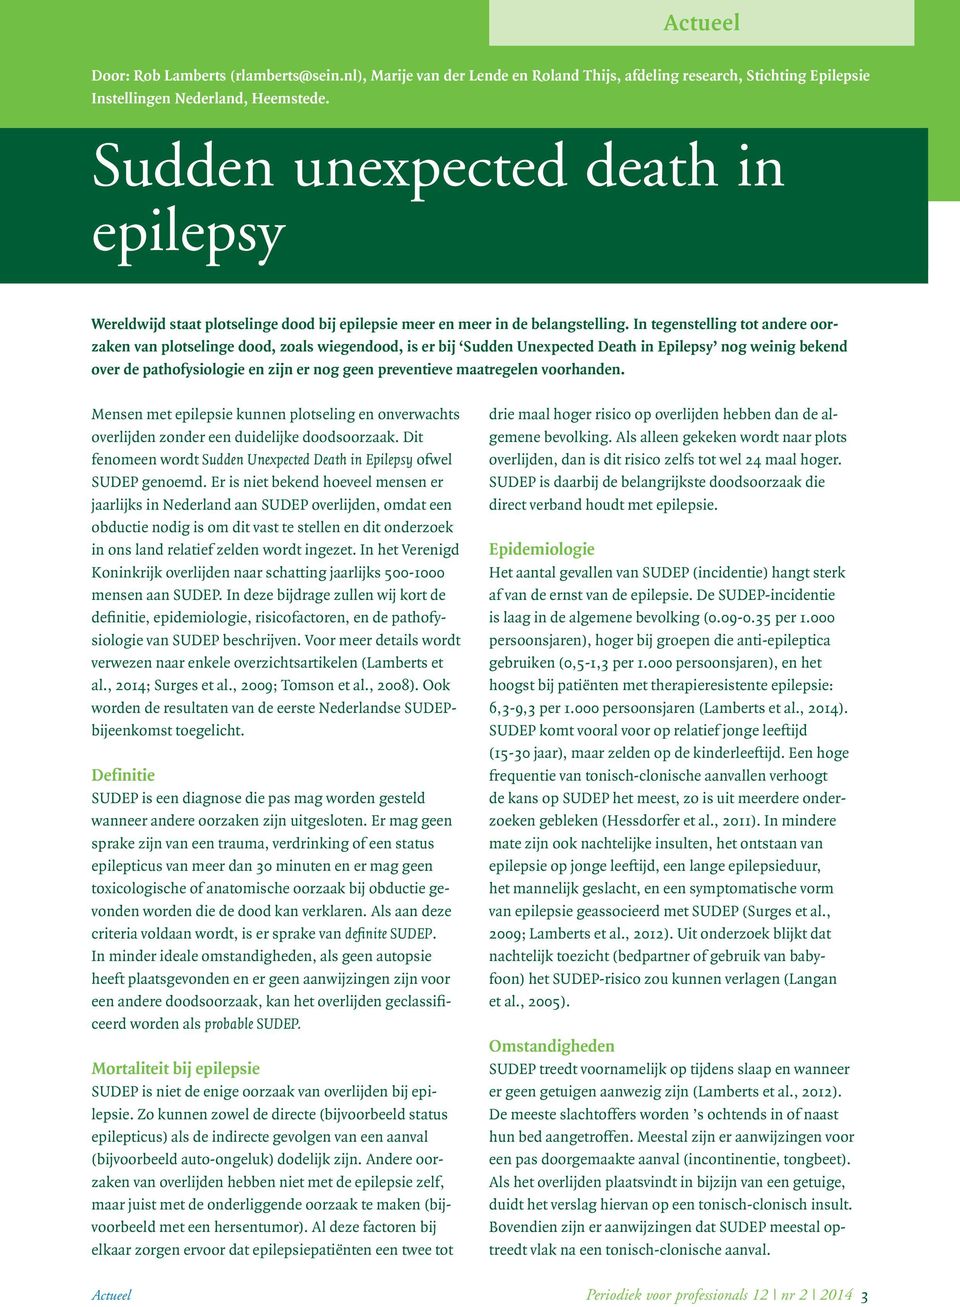 In tegenstelling tot andere oorzaken van plotselinge dood, zoals wiegendood, is er bij Sudden Unexpected Death in Epilepsy nog weinig bekend over de pathofysiologie en zijn er nog geen preventieve